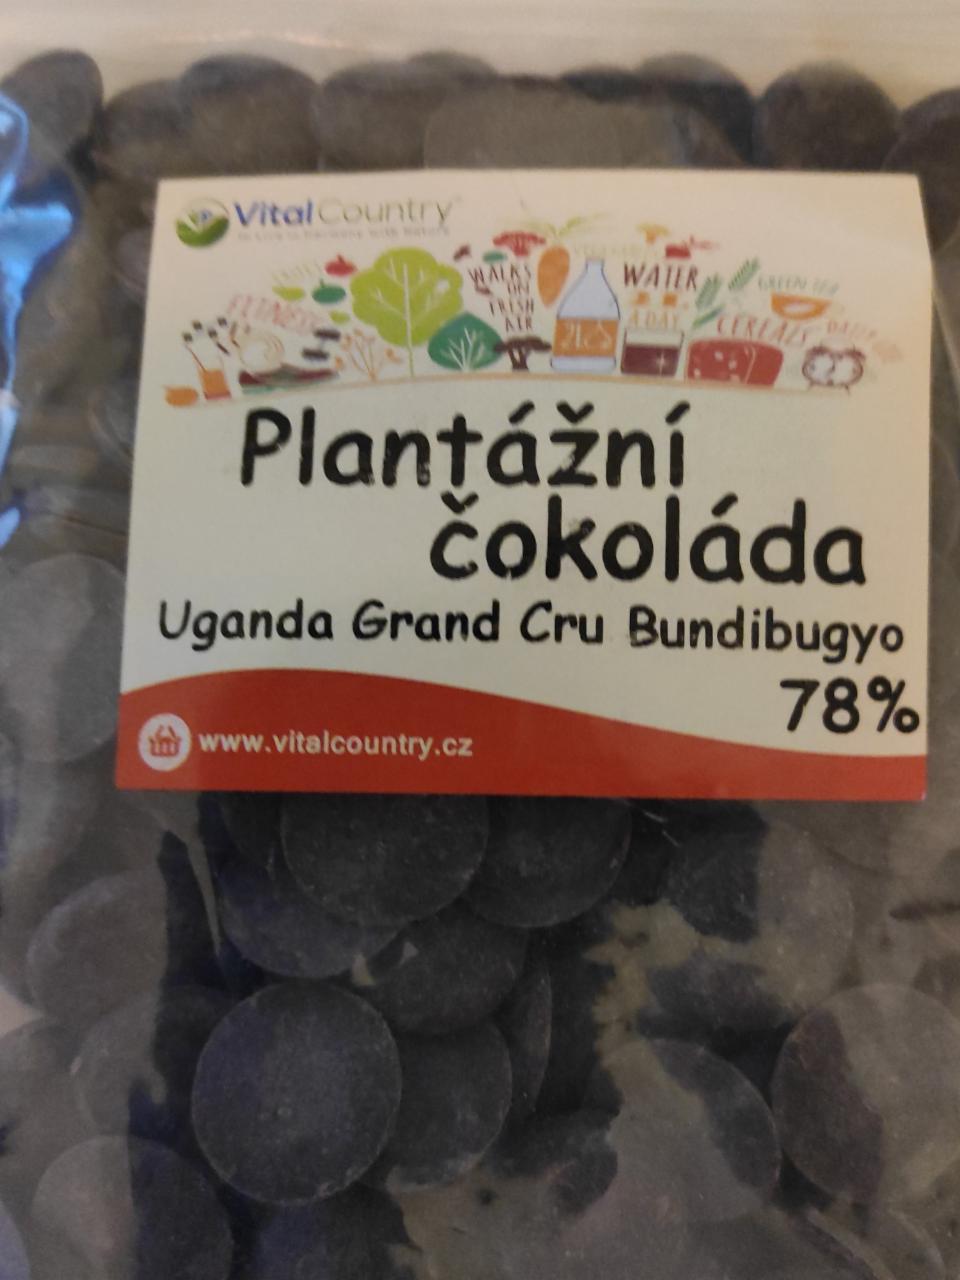 Fotografie - Plantážní čokoláda Uganda Grand Cru Bundibugyo 78% VitalCountry